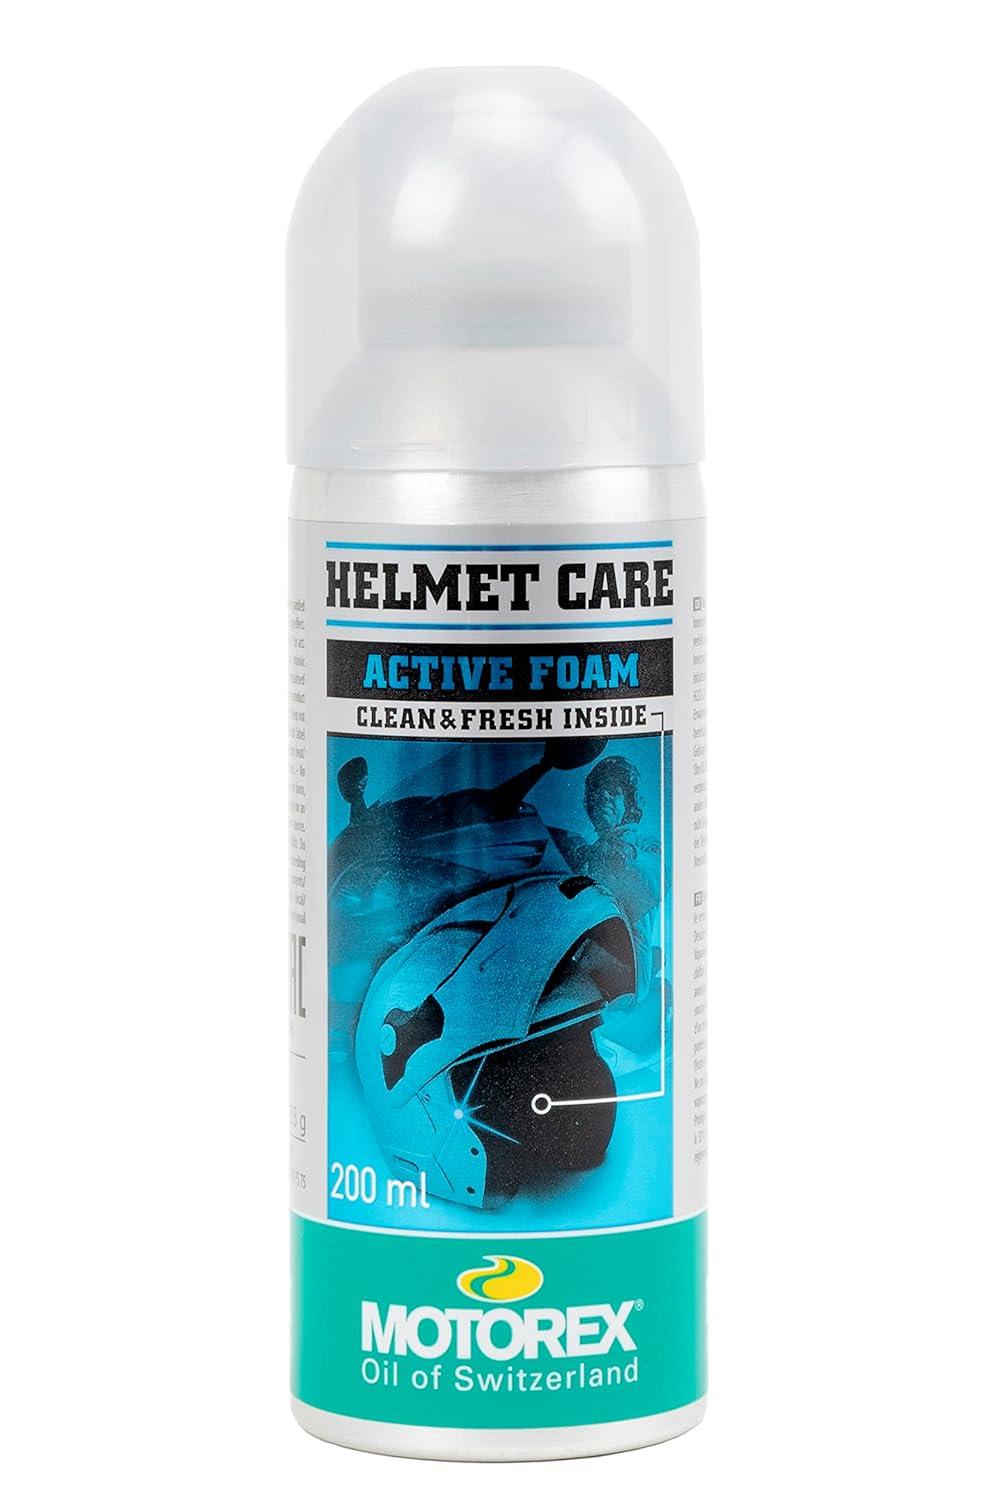 Motorex Helmet Care Kask Temizlik ve Bakım Köpüğü 200ml